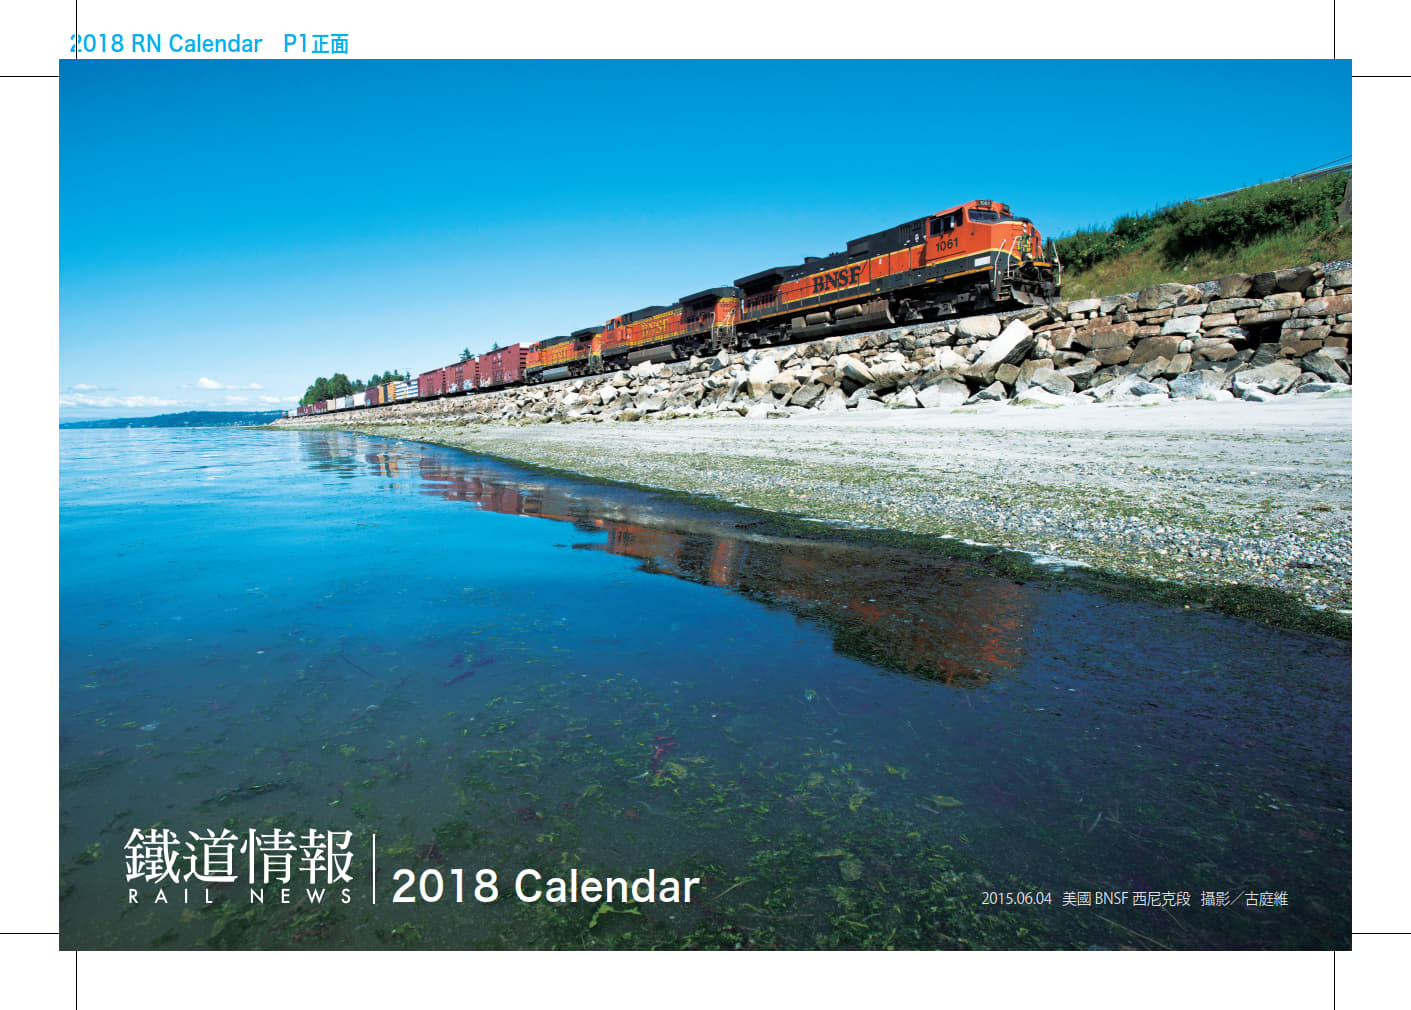 《鐵道情報》2018年桌曆